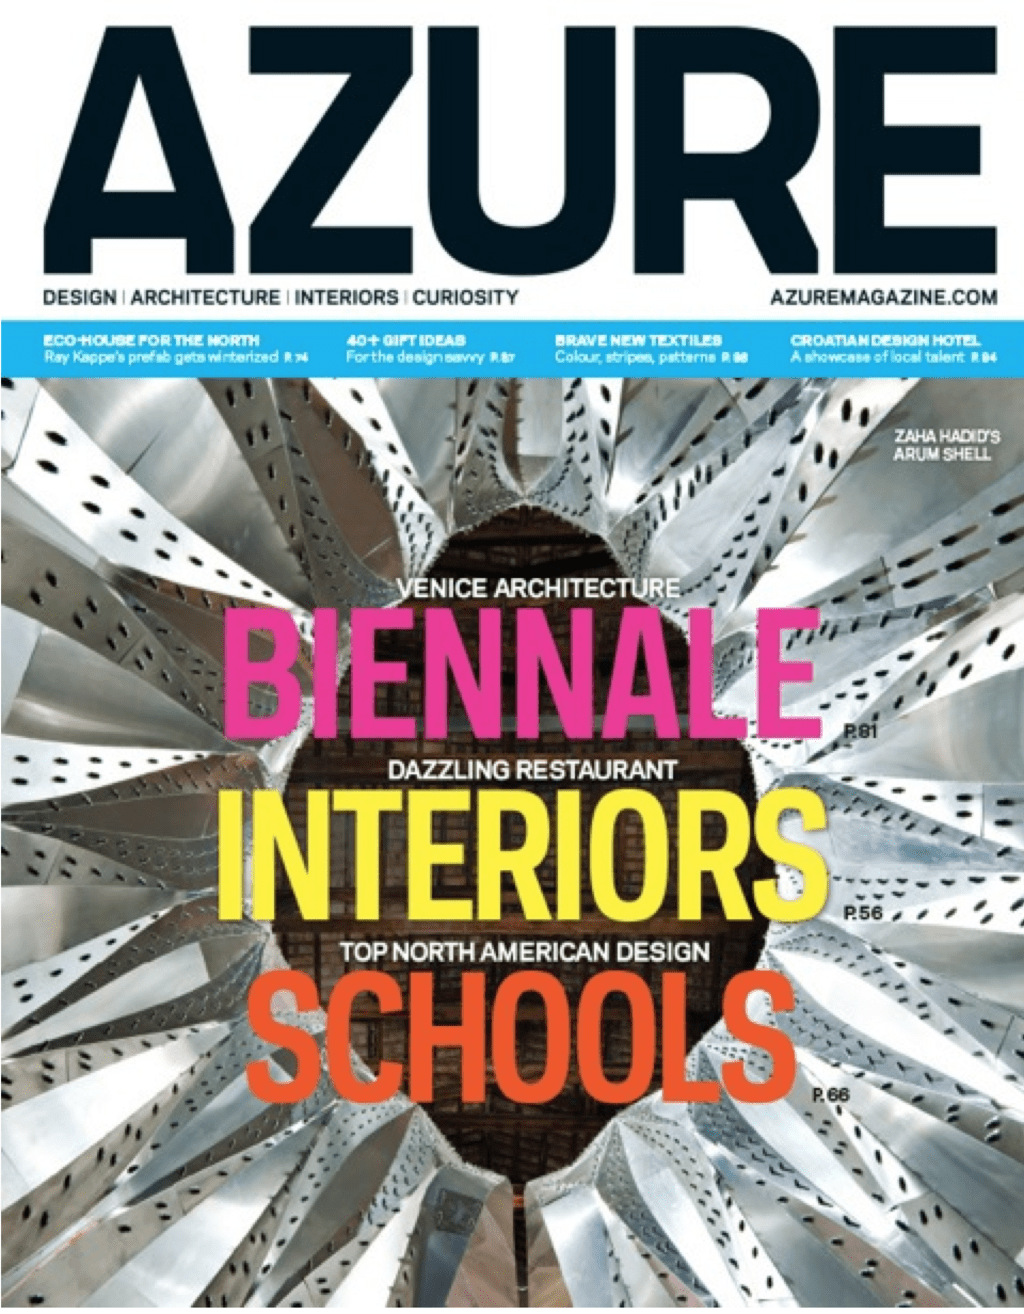 Azure November 2012 cover